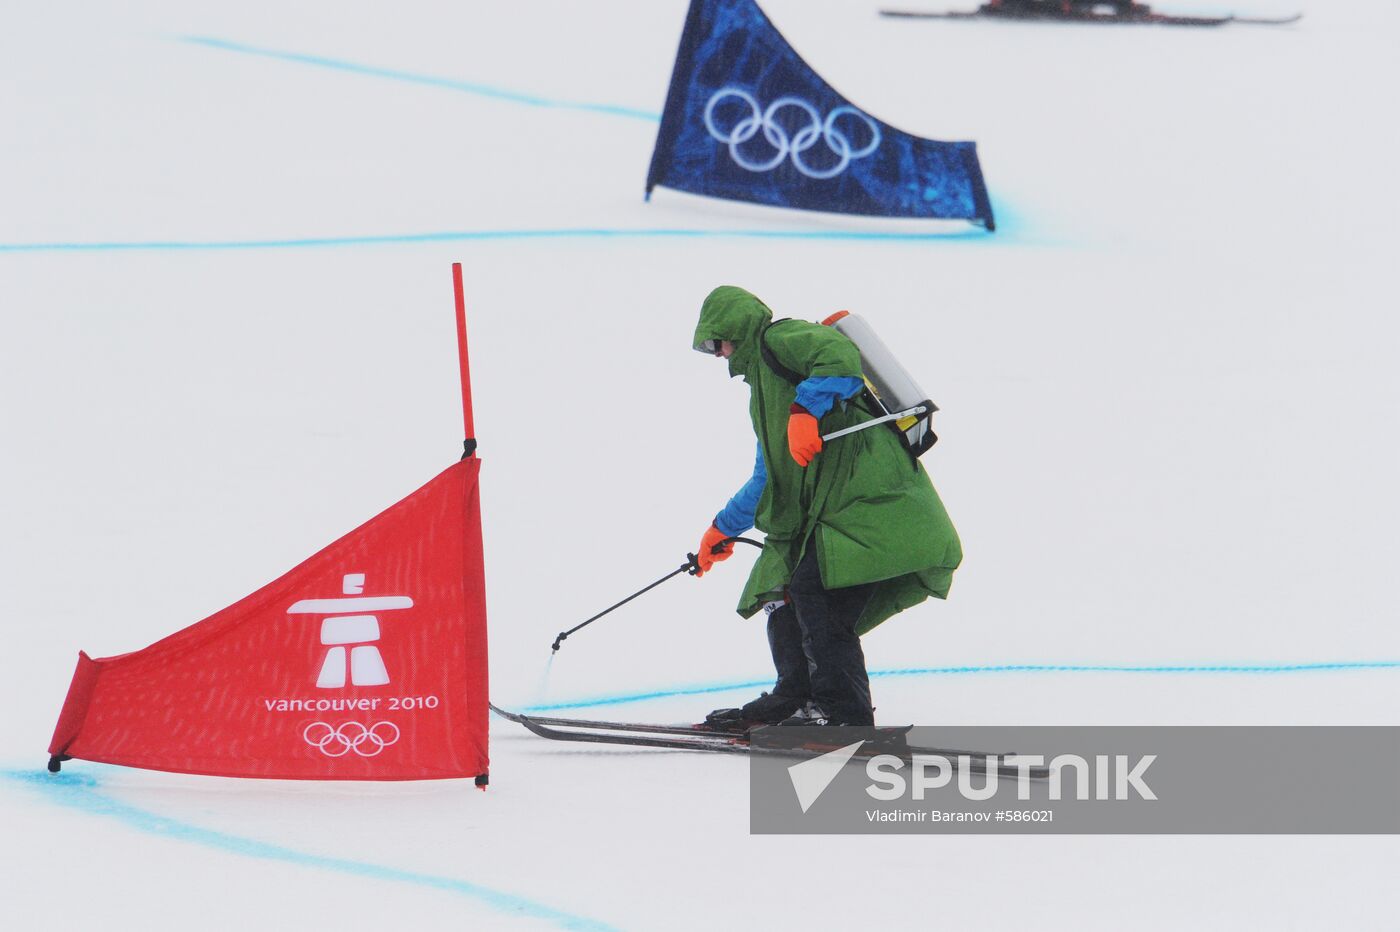 Marking ski track